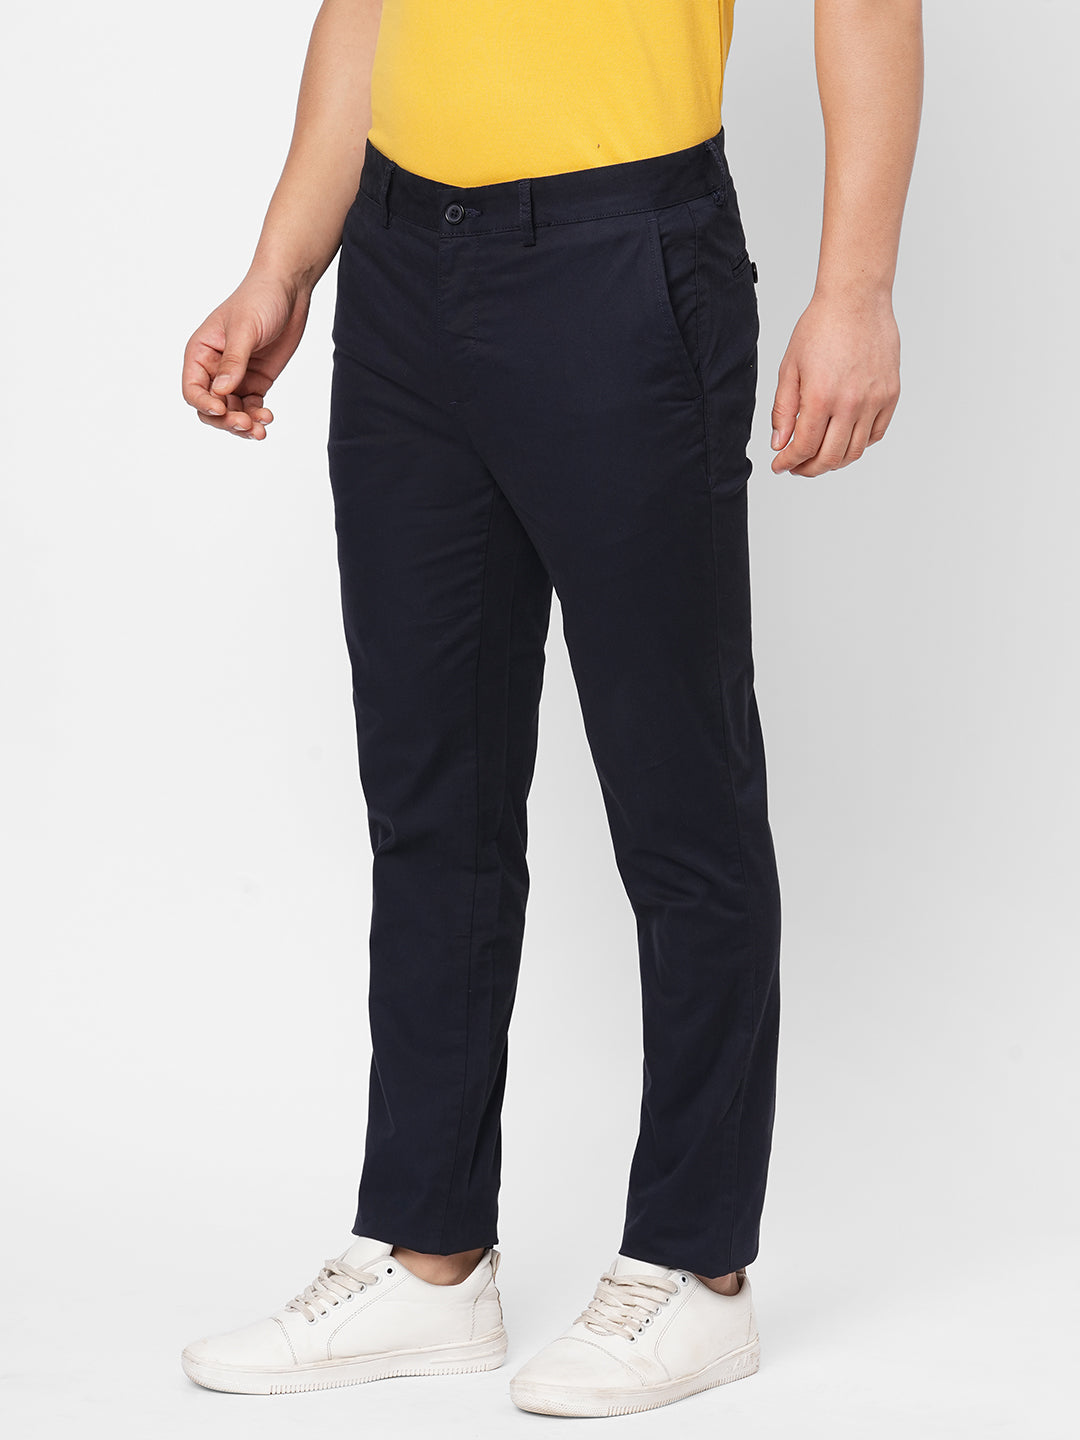 Men's Navy Cotton Lycra Slim Fit Pant